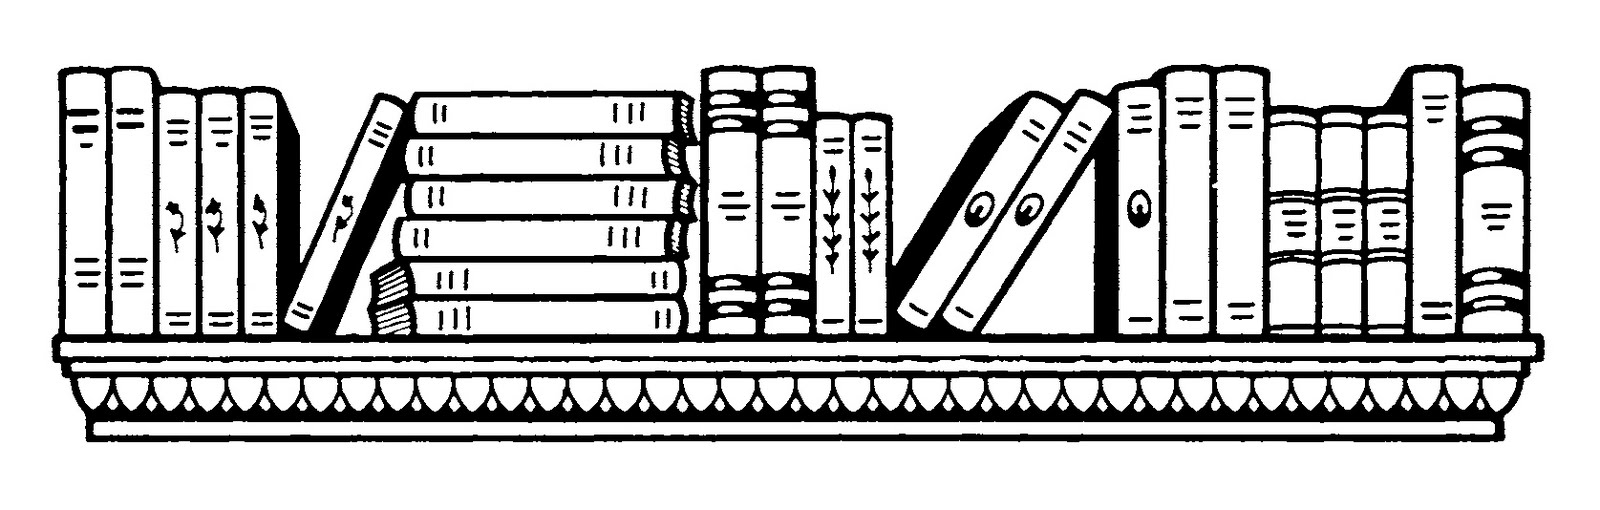 books clip art border